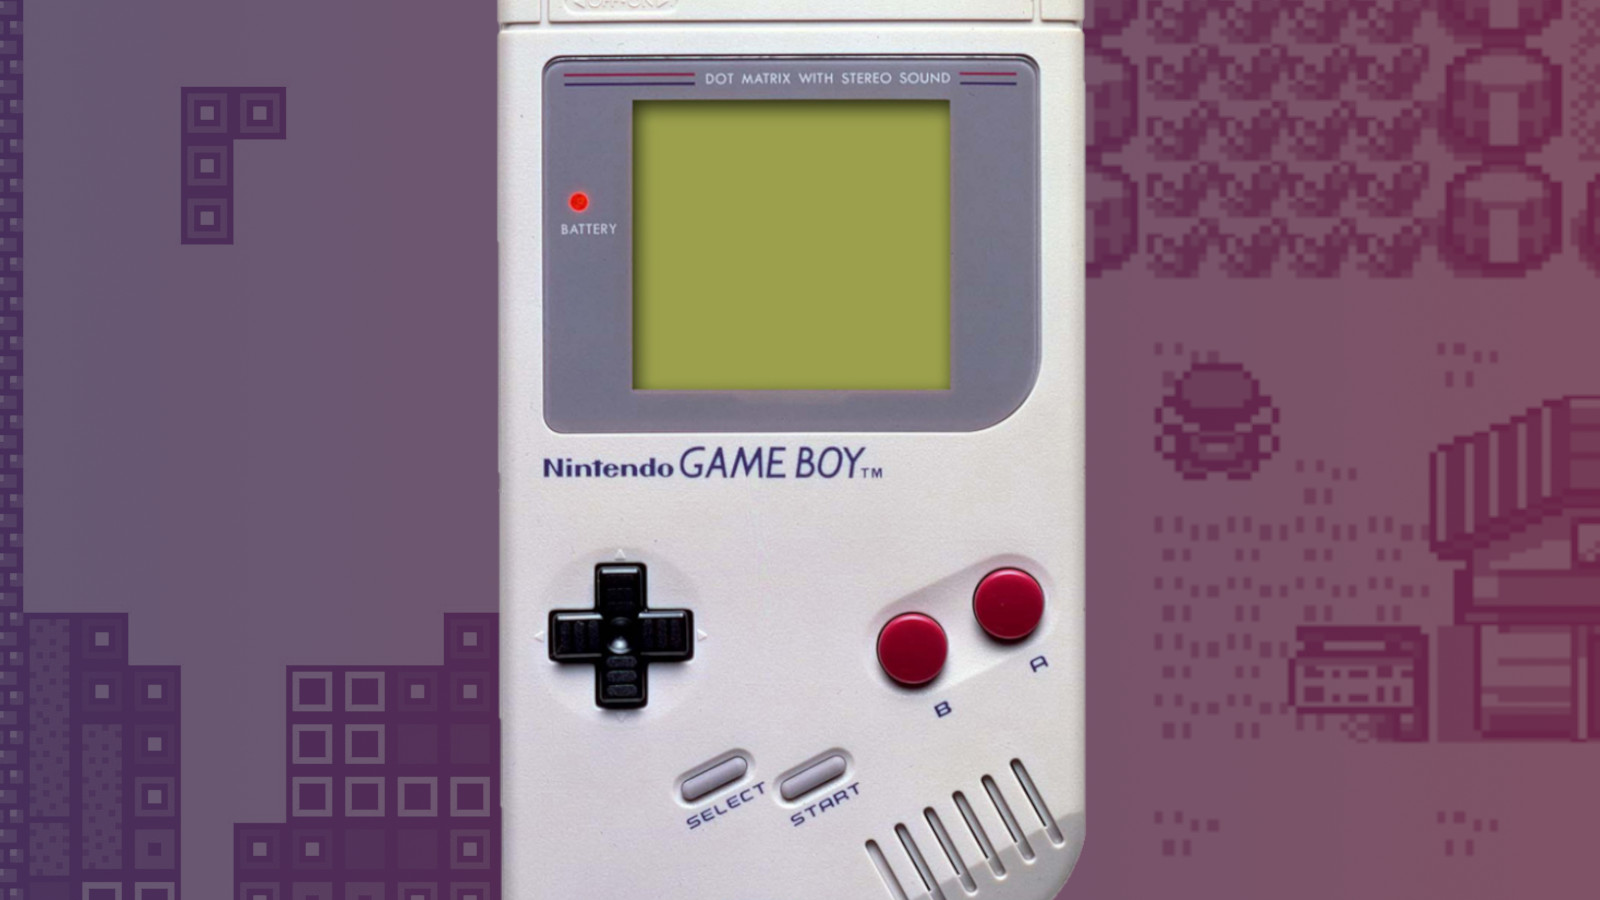 the Game Boy. Tetris and Pokemon